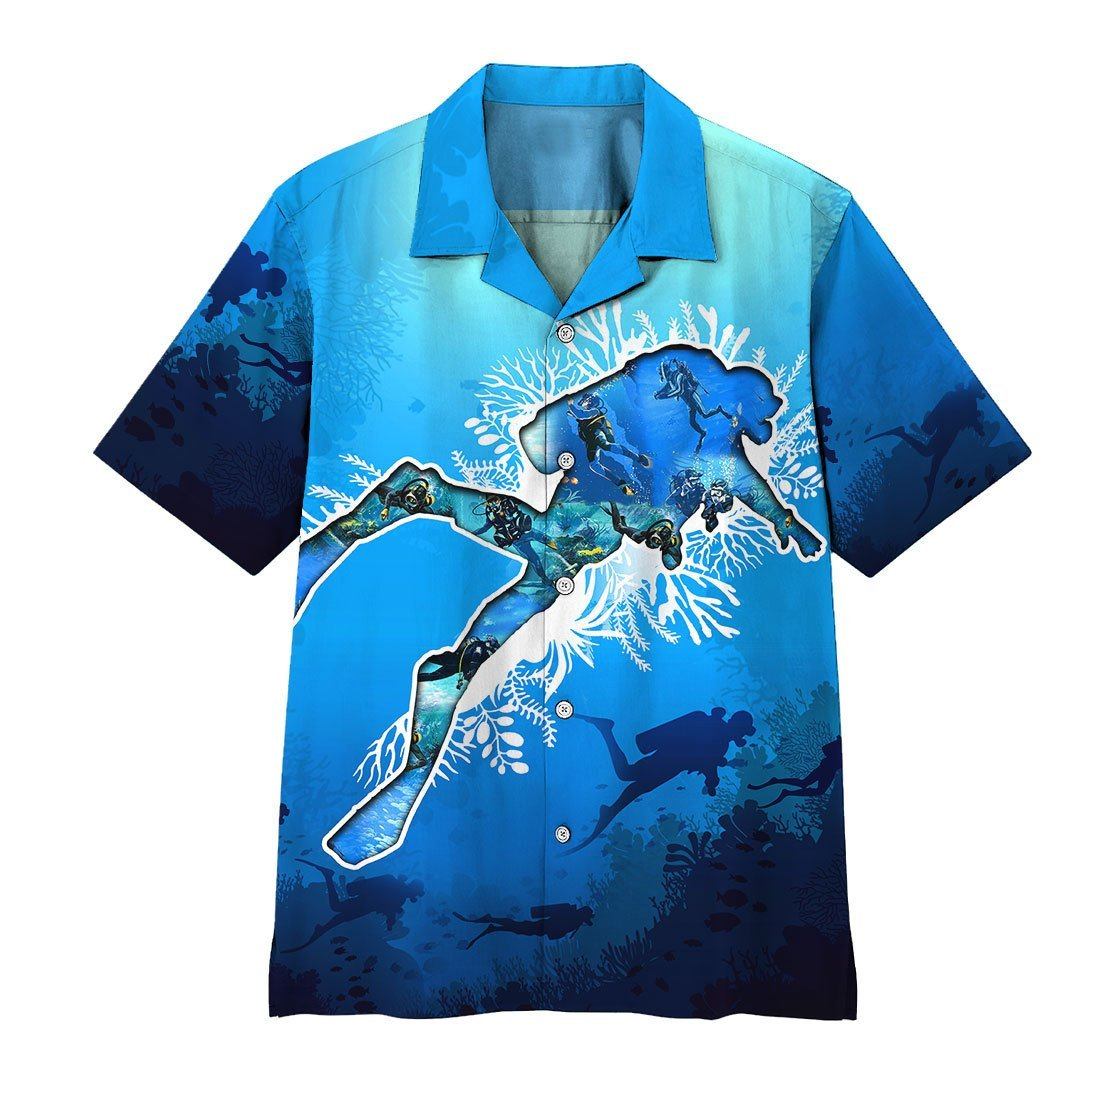 Gearhumans 3D Scuba Diving Hawaii Shirt ZZ2105214 Hawai Shirt Short Sleeve Shirt S 